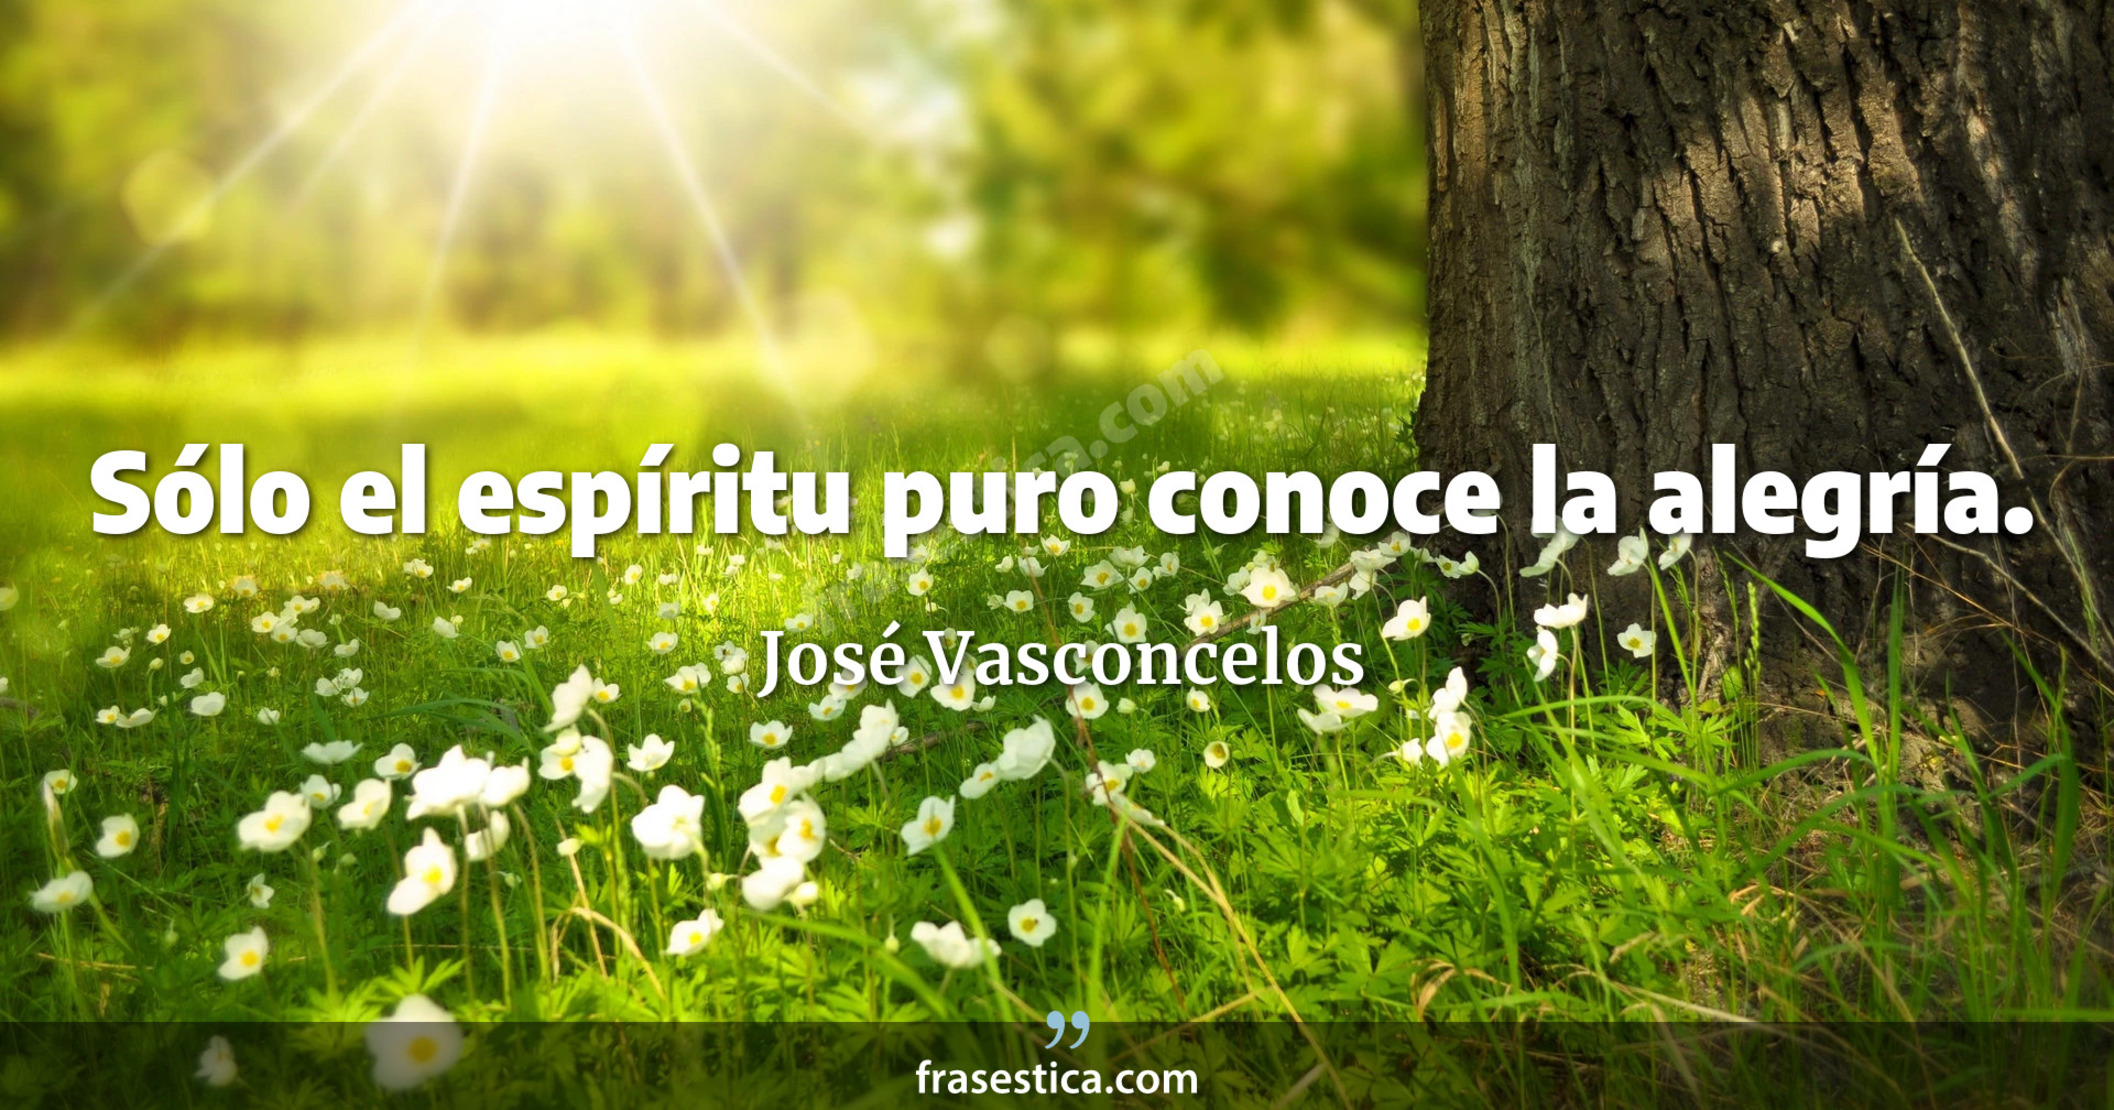 Sólo el espíritu puro conoce la alegría. - José Vasconcelos